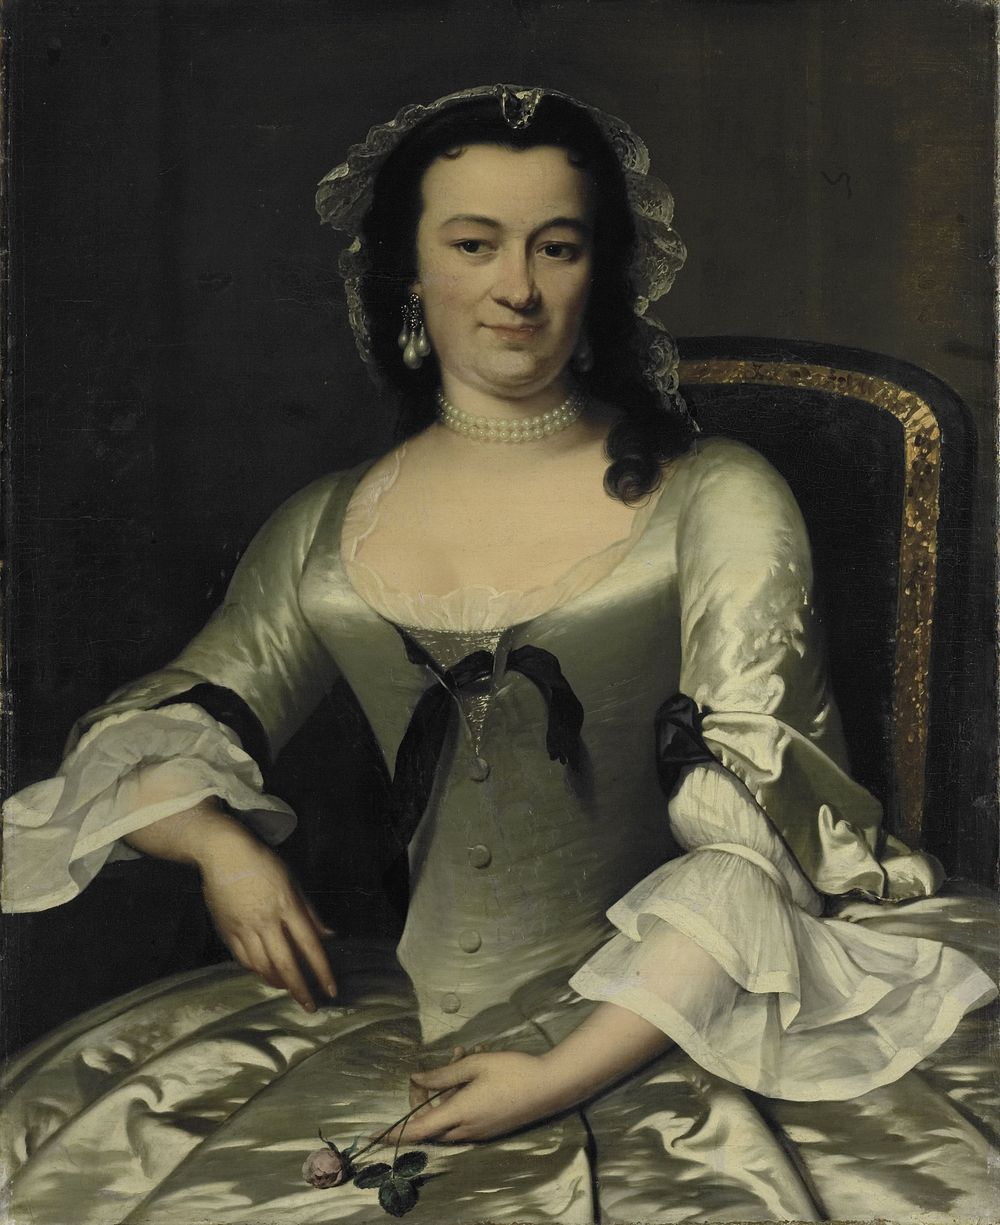 Portrait of Maria Henriëtte van de Pol, Wife of Willem Sautijn (1750 - 1760) by Frans van der Mijn